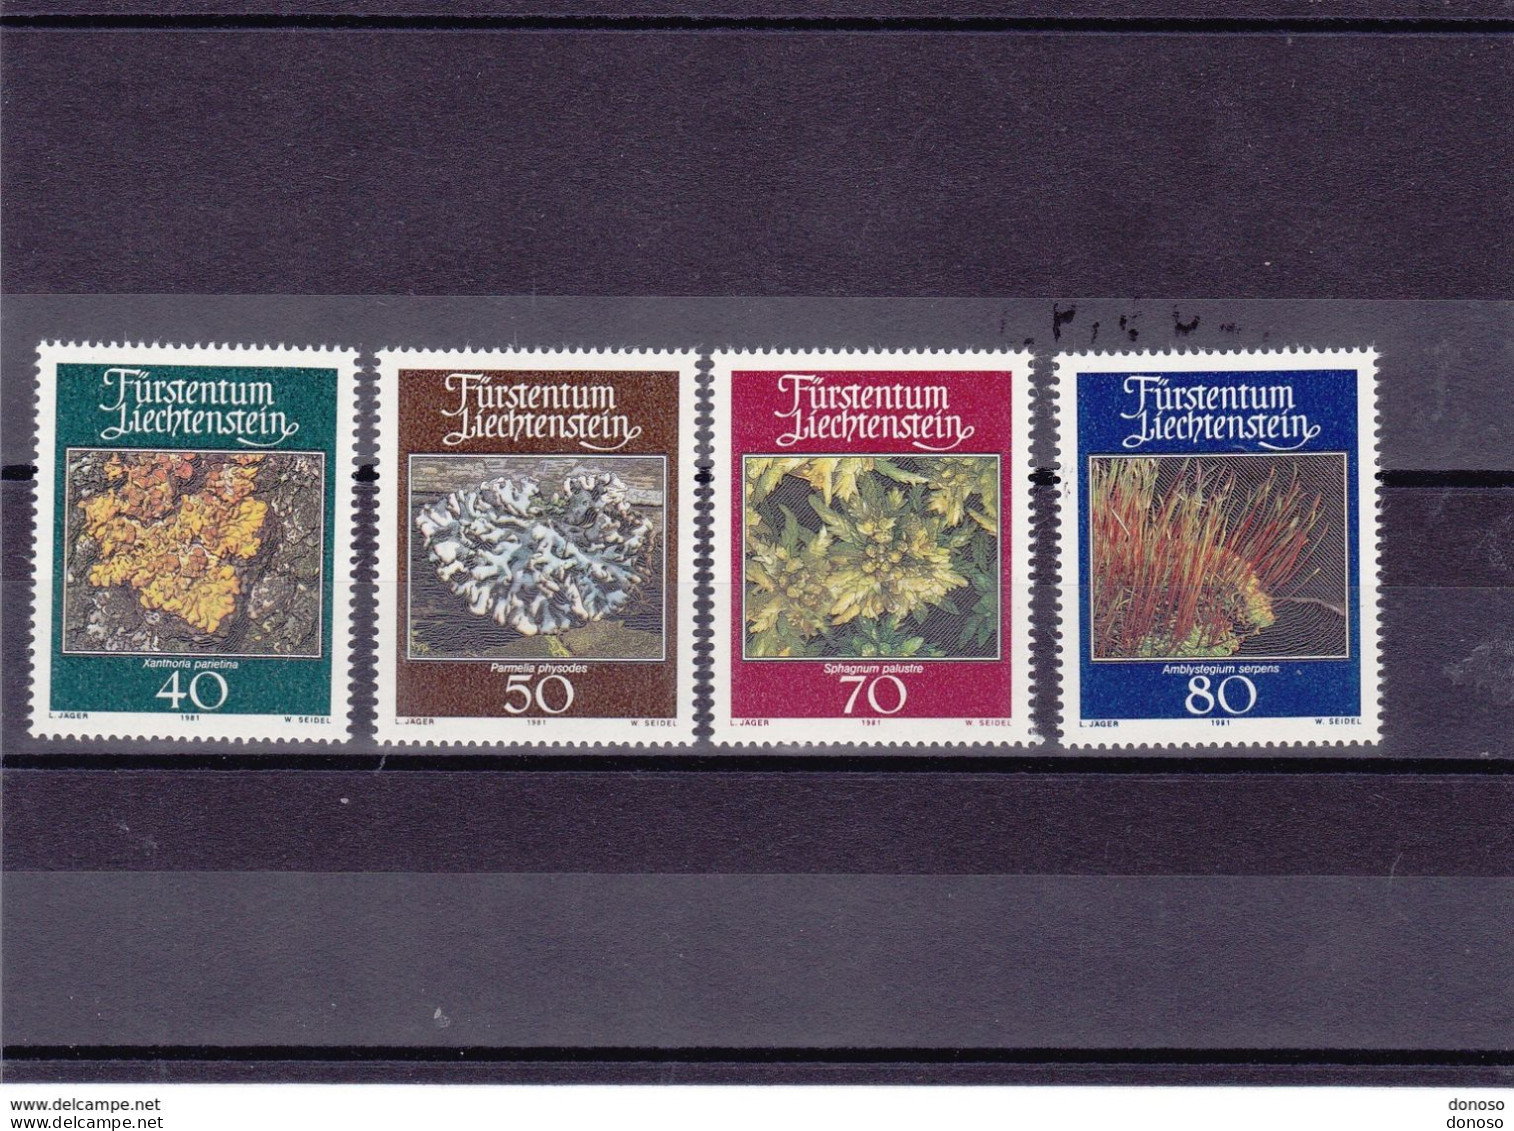 LIECHTENSTEIN 1981 MOUSSES LICHENS Yvert 717-720, Michel 776-779 NEUF** MNH Cote 4 Euros - Unused Stamps